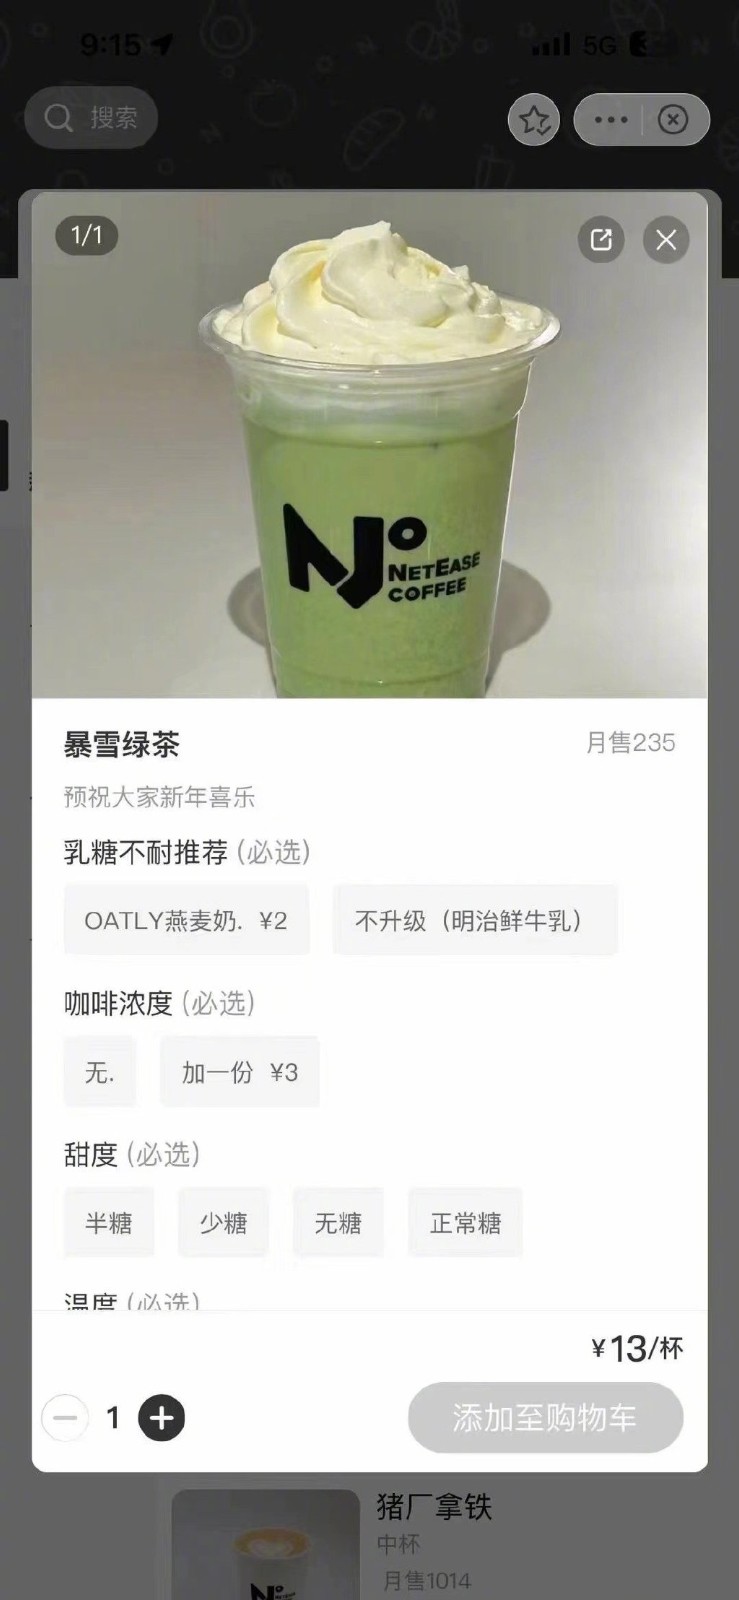 网传网易咖啡厅推出“暴雪绿茶”饮品 订单火爆已售罄_1